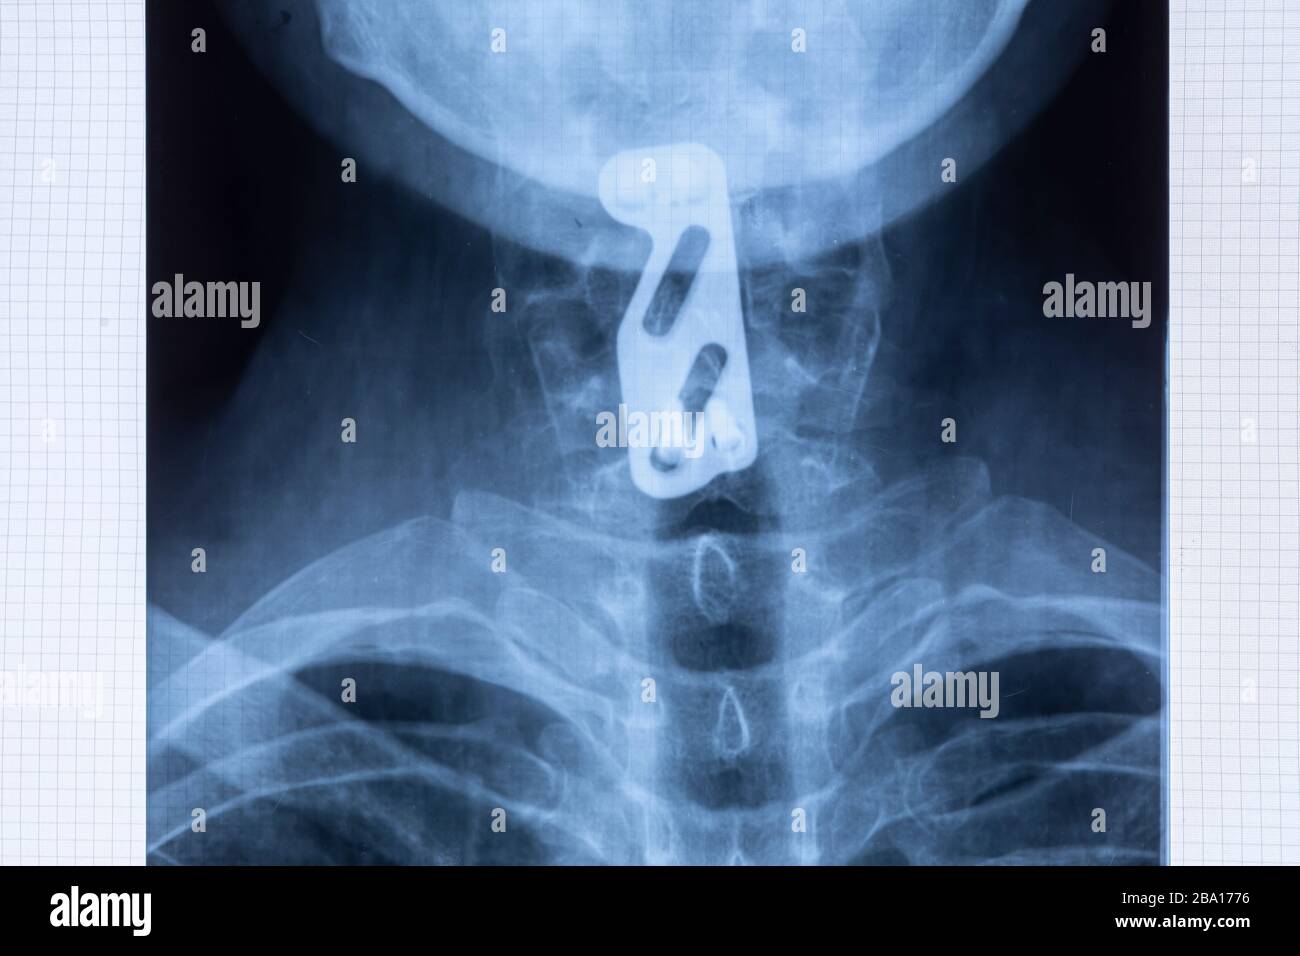 Radiografía de fijación de placas de titanio para soportar la columna cervical después de lesiones vertebrales C5 y C6. Proporcionar estabilidad del cuello mediante instrumentos espinales Foto de stock